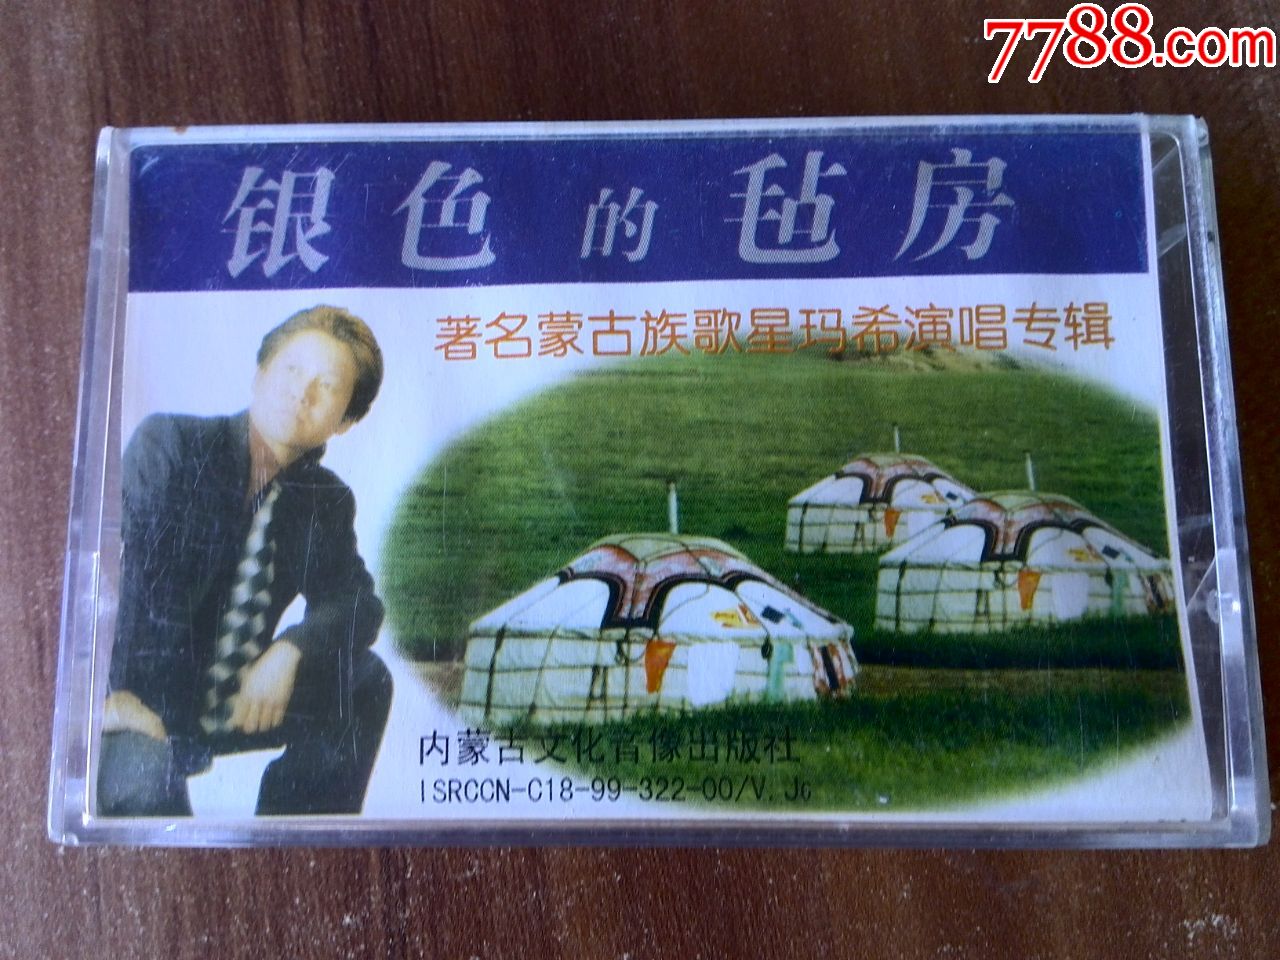 著名蒙古族歌星玛希演唱专辑《银色的毡房》